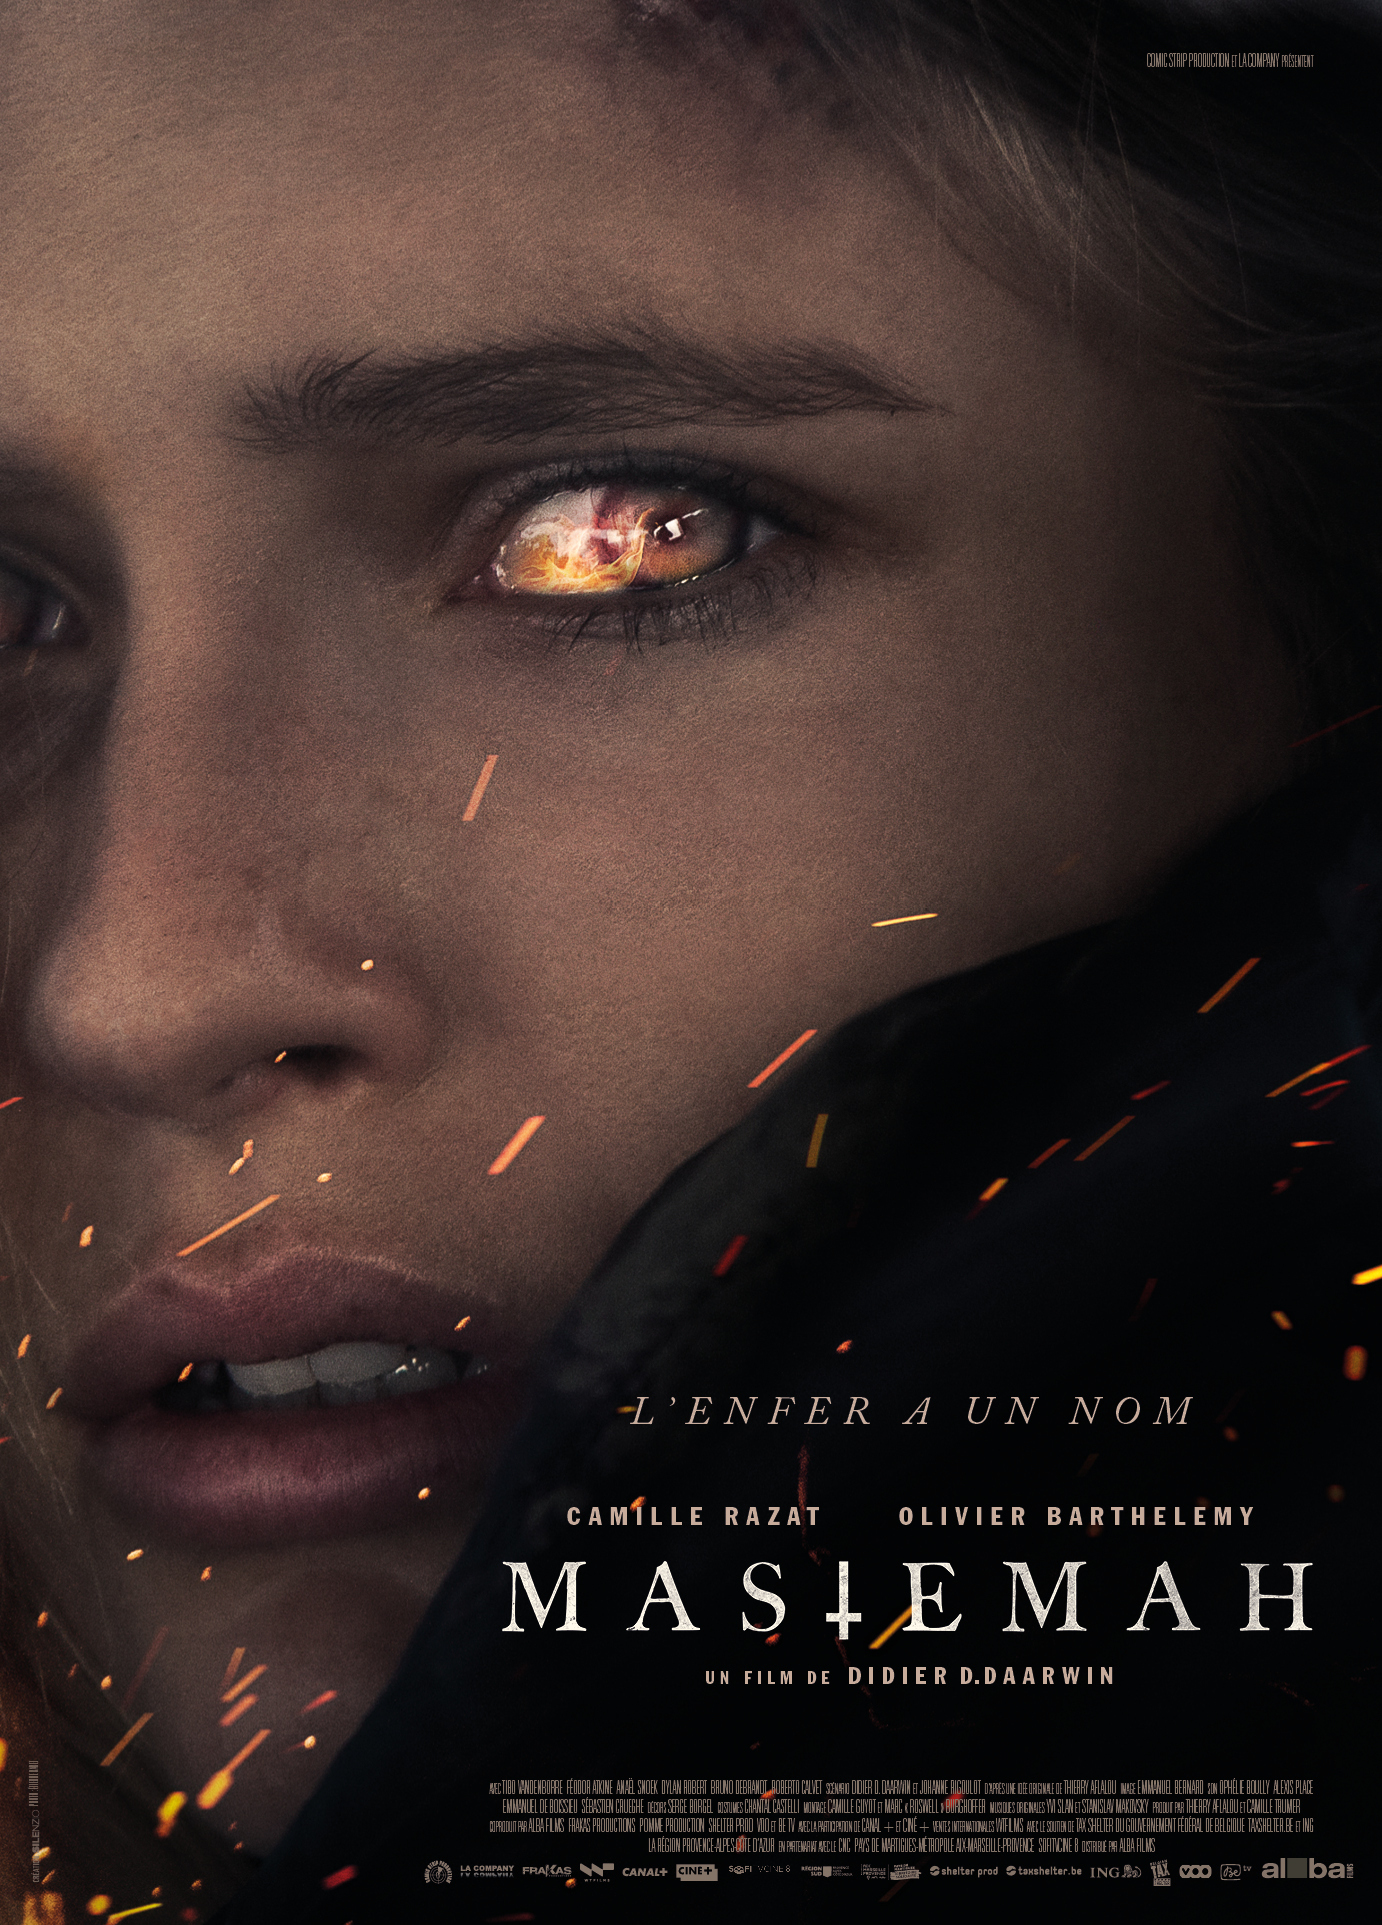 Découvrez la bande-annonce de "MASTEMAH", le film d'horreur de l'été avec  Camille Razat. Le 29 juin 2022 au cinéma. - A LA POURSUITE DU 7EME ART CINE  DVD